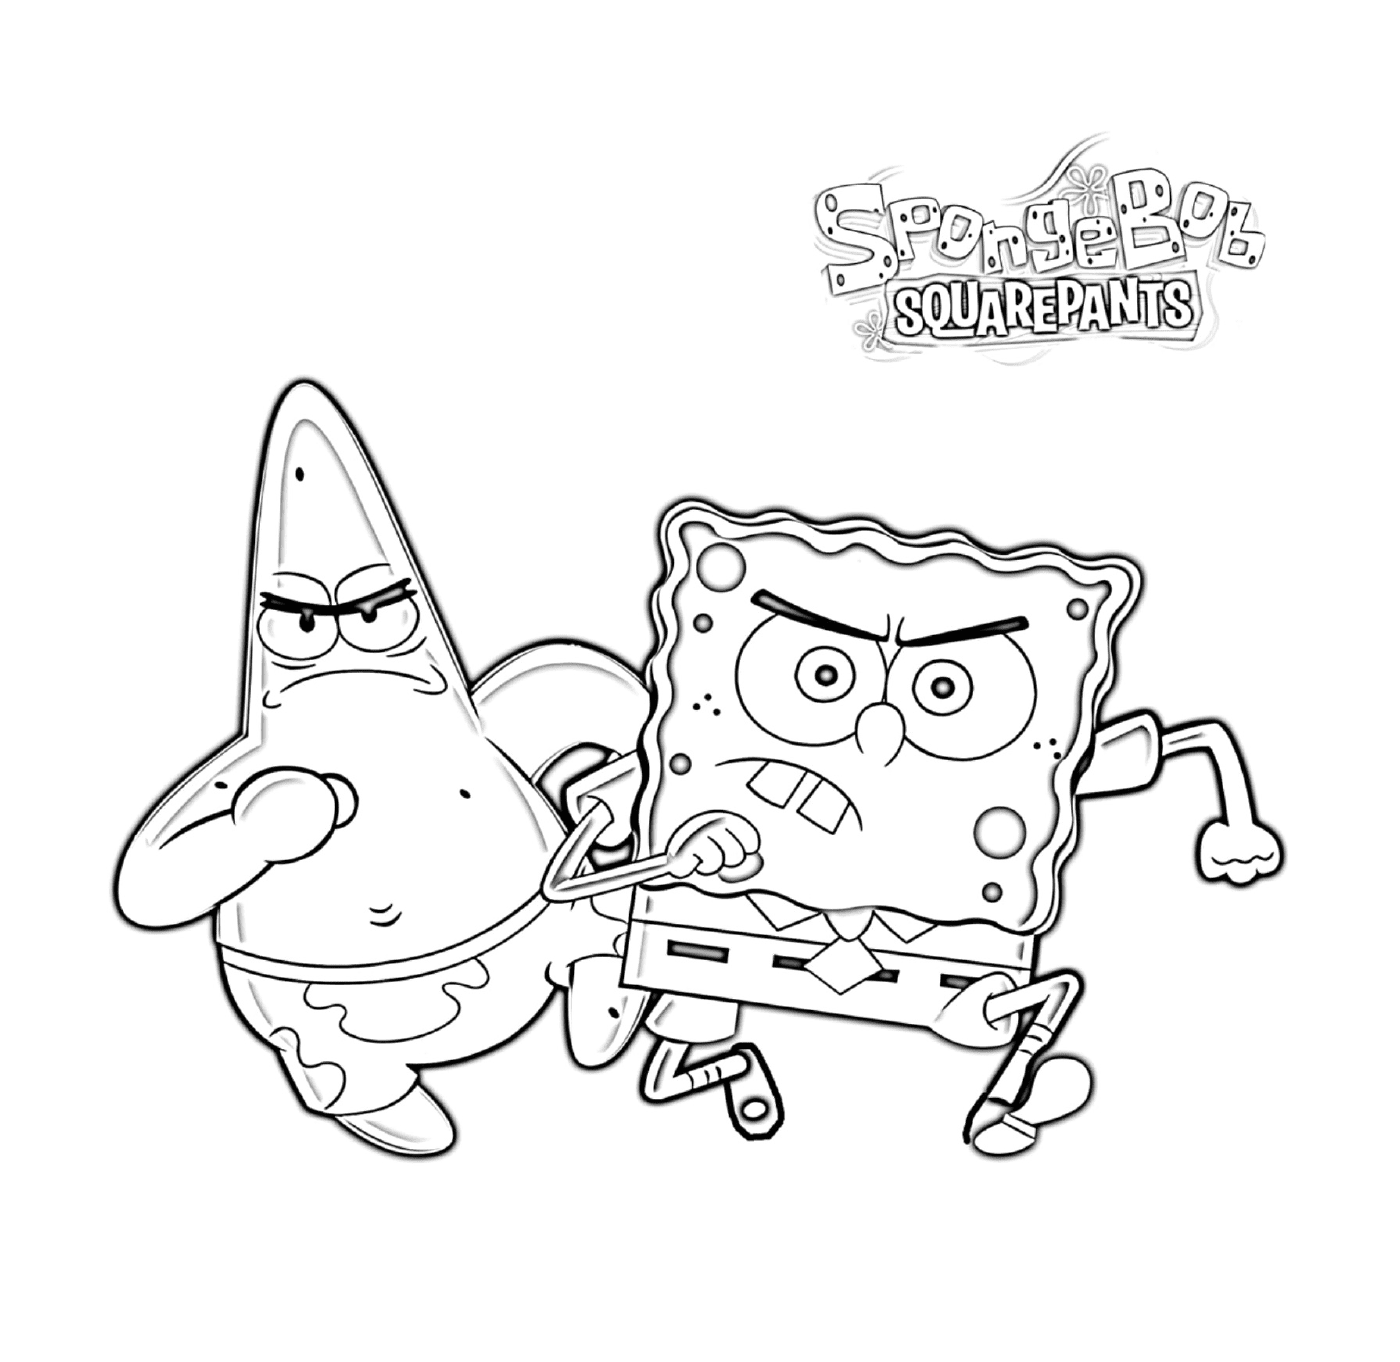  Spongebob und Patrick wütend 